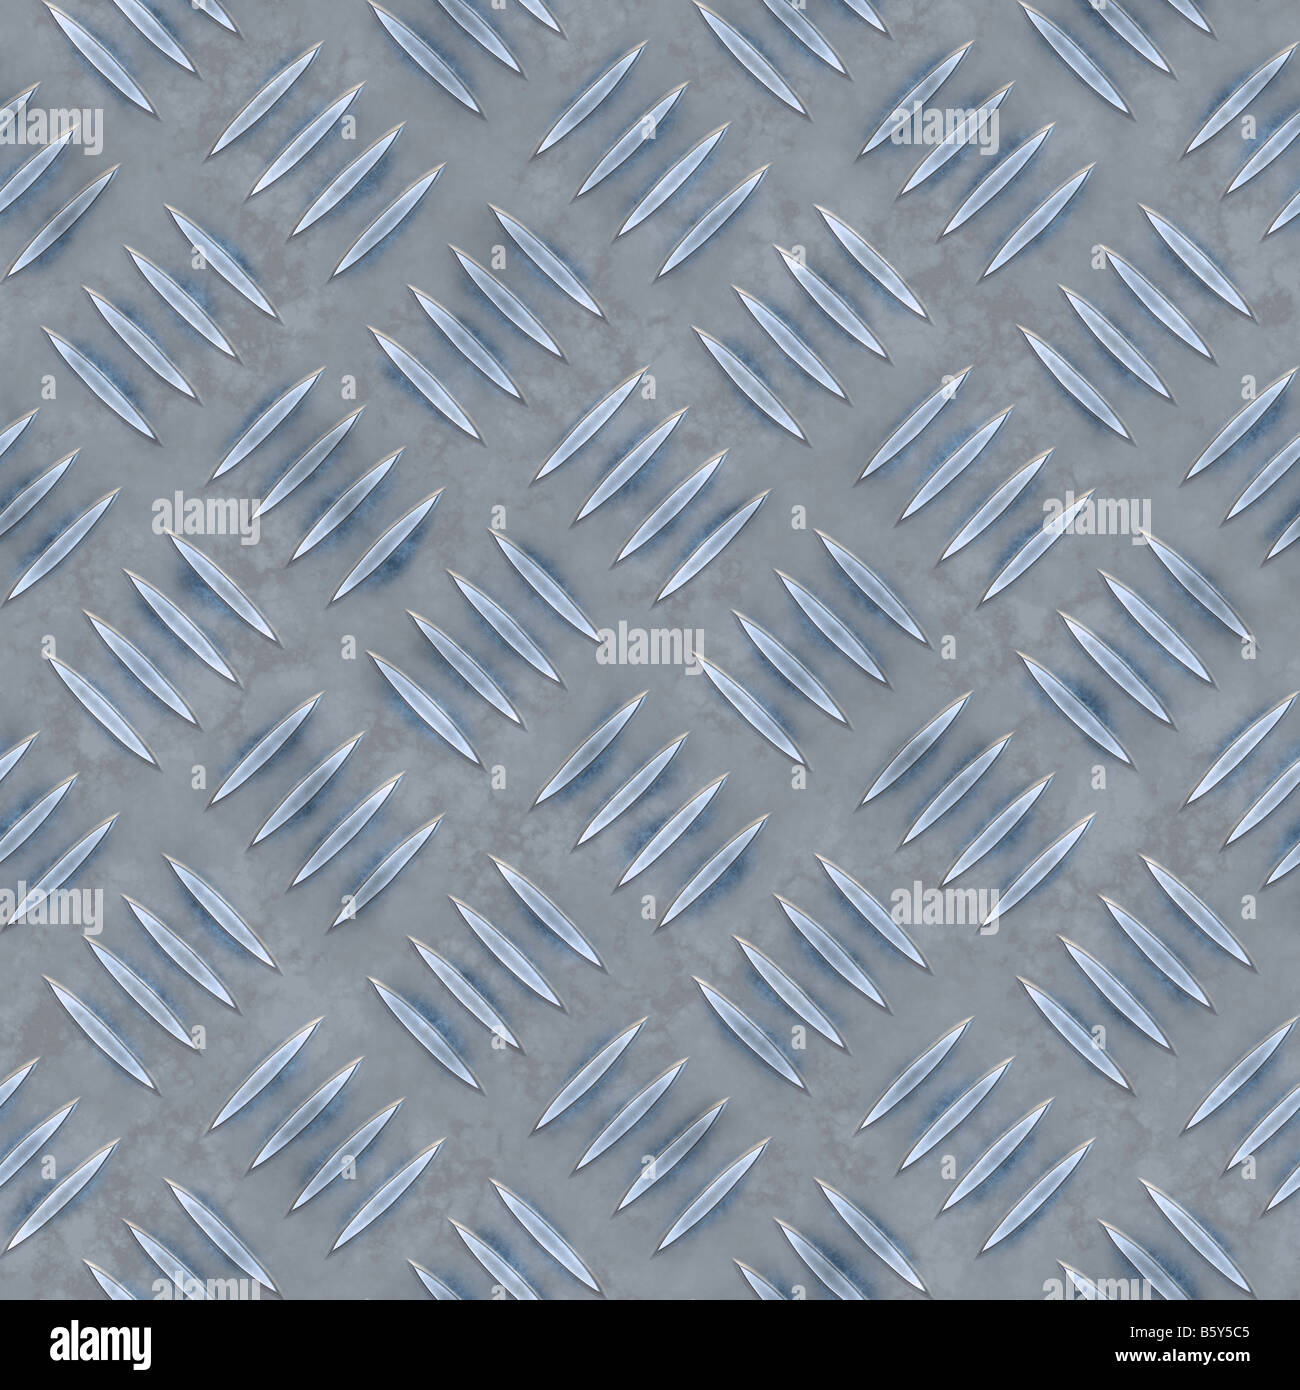 Placa de diamante azul esta textura azulejos perfectamente como un patrón en cualquier dirección Foto de stock